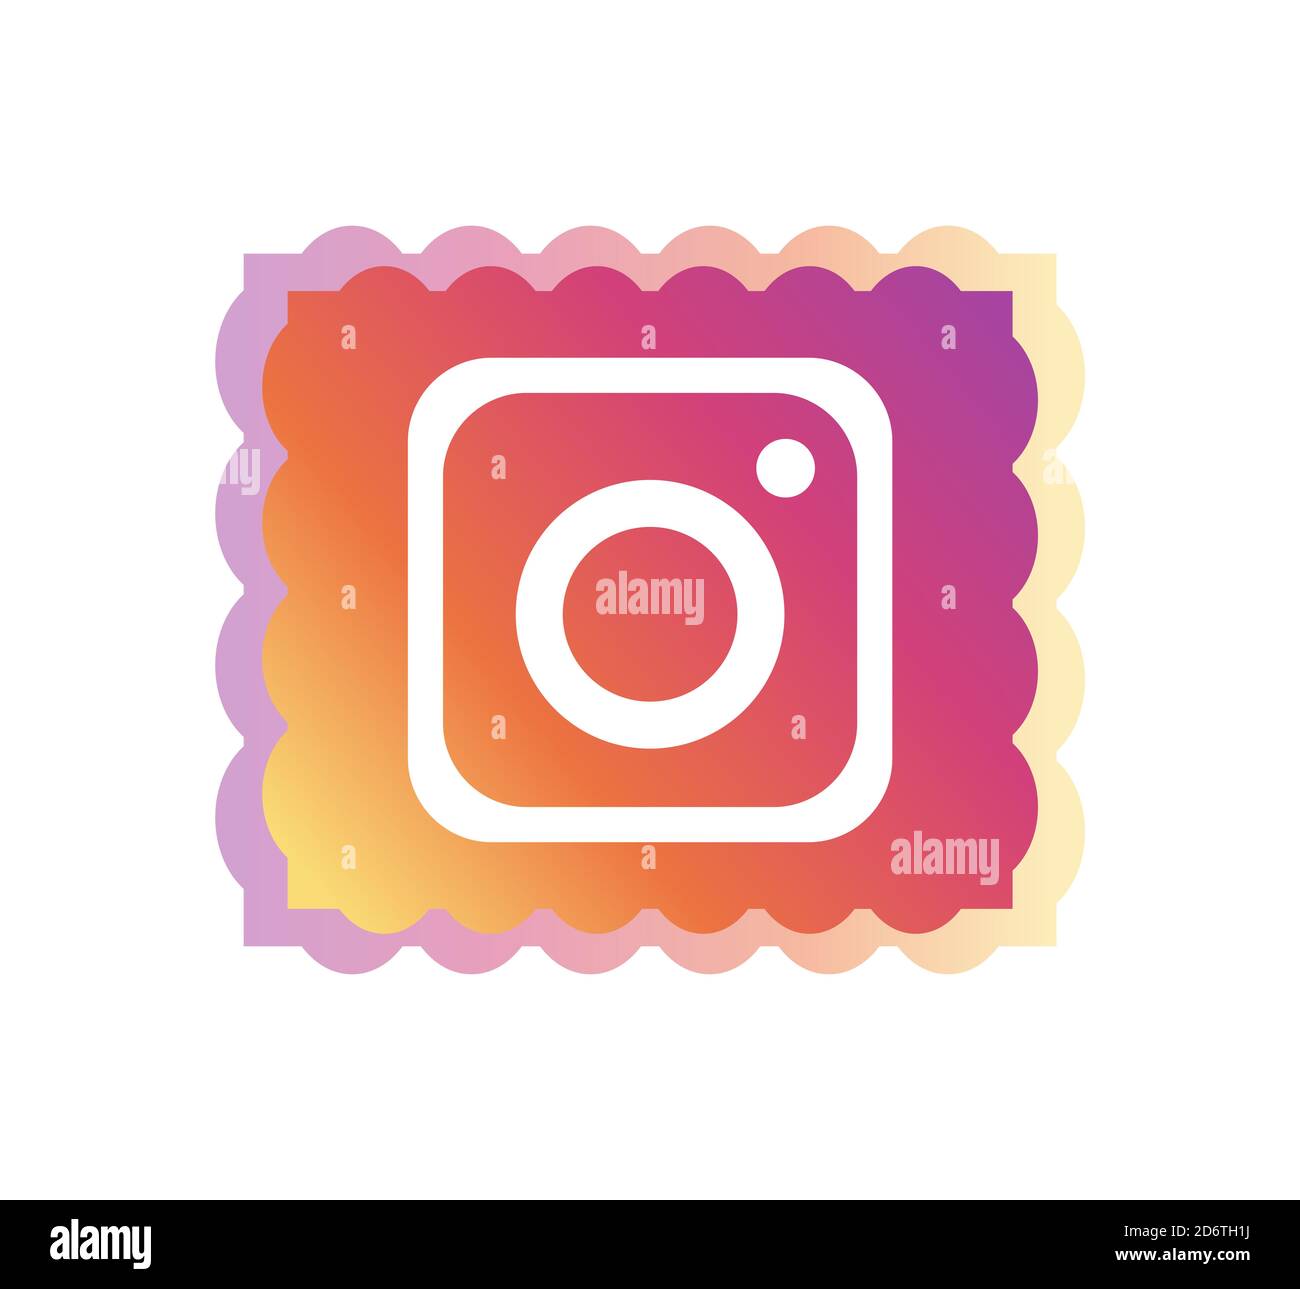 10 graphic designers reimagine the iconic Instagram logo | Dribbble Design  Blog